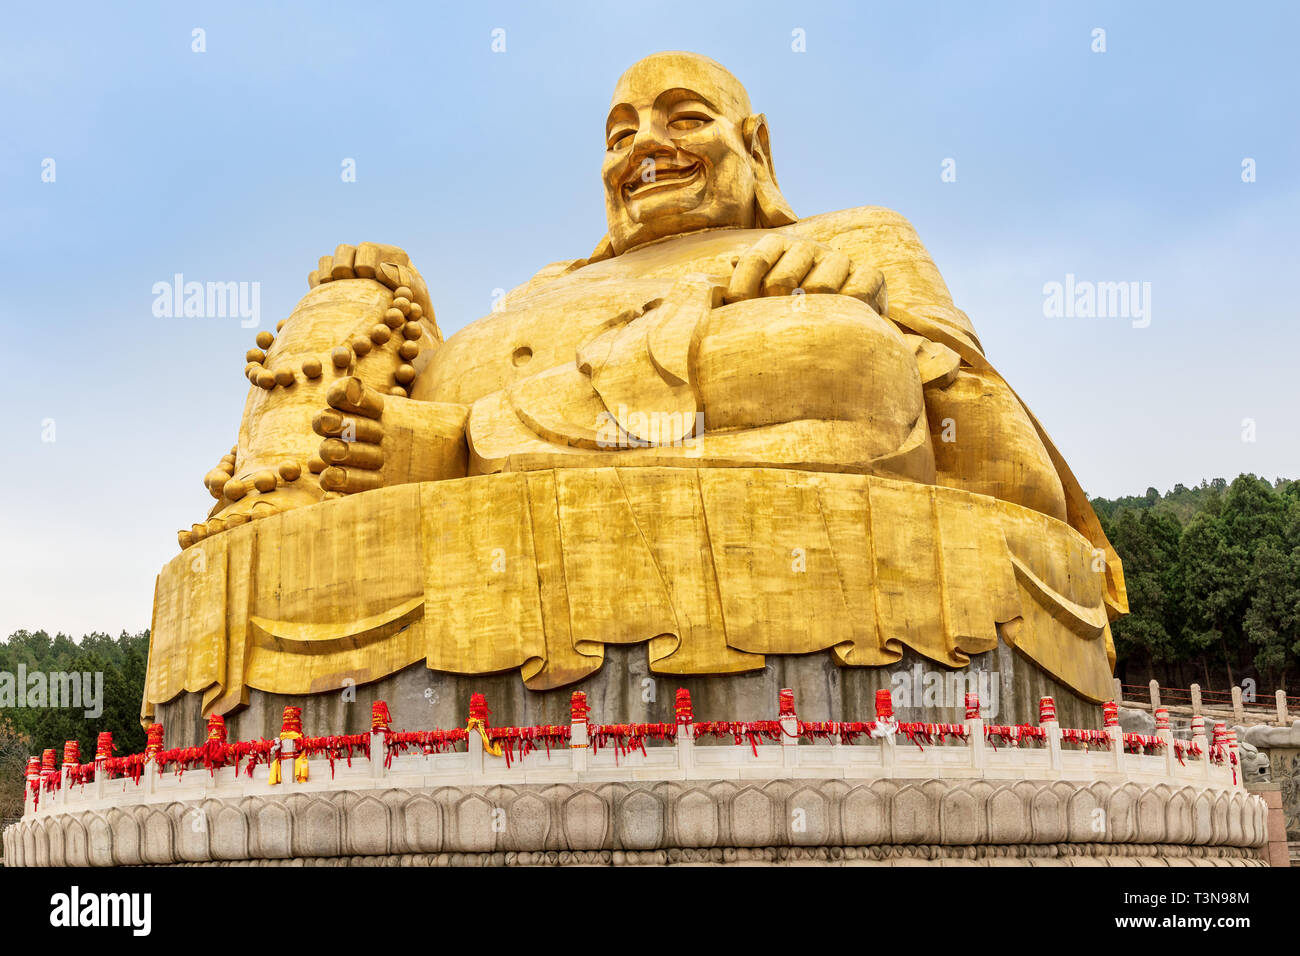 Big golden statue of Buddha in Qianfo Shan, The Thousand Buddha Mountain, Jinan, Shandong Province, China Stock Photo